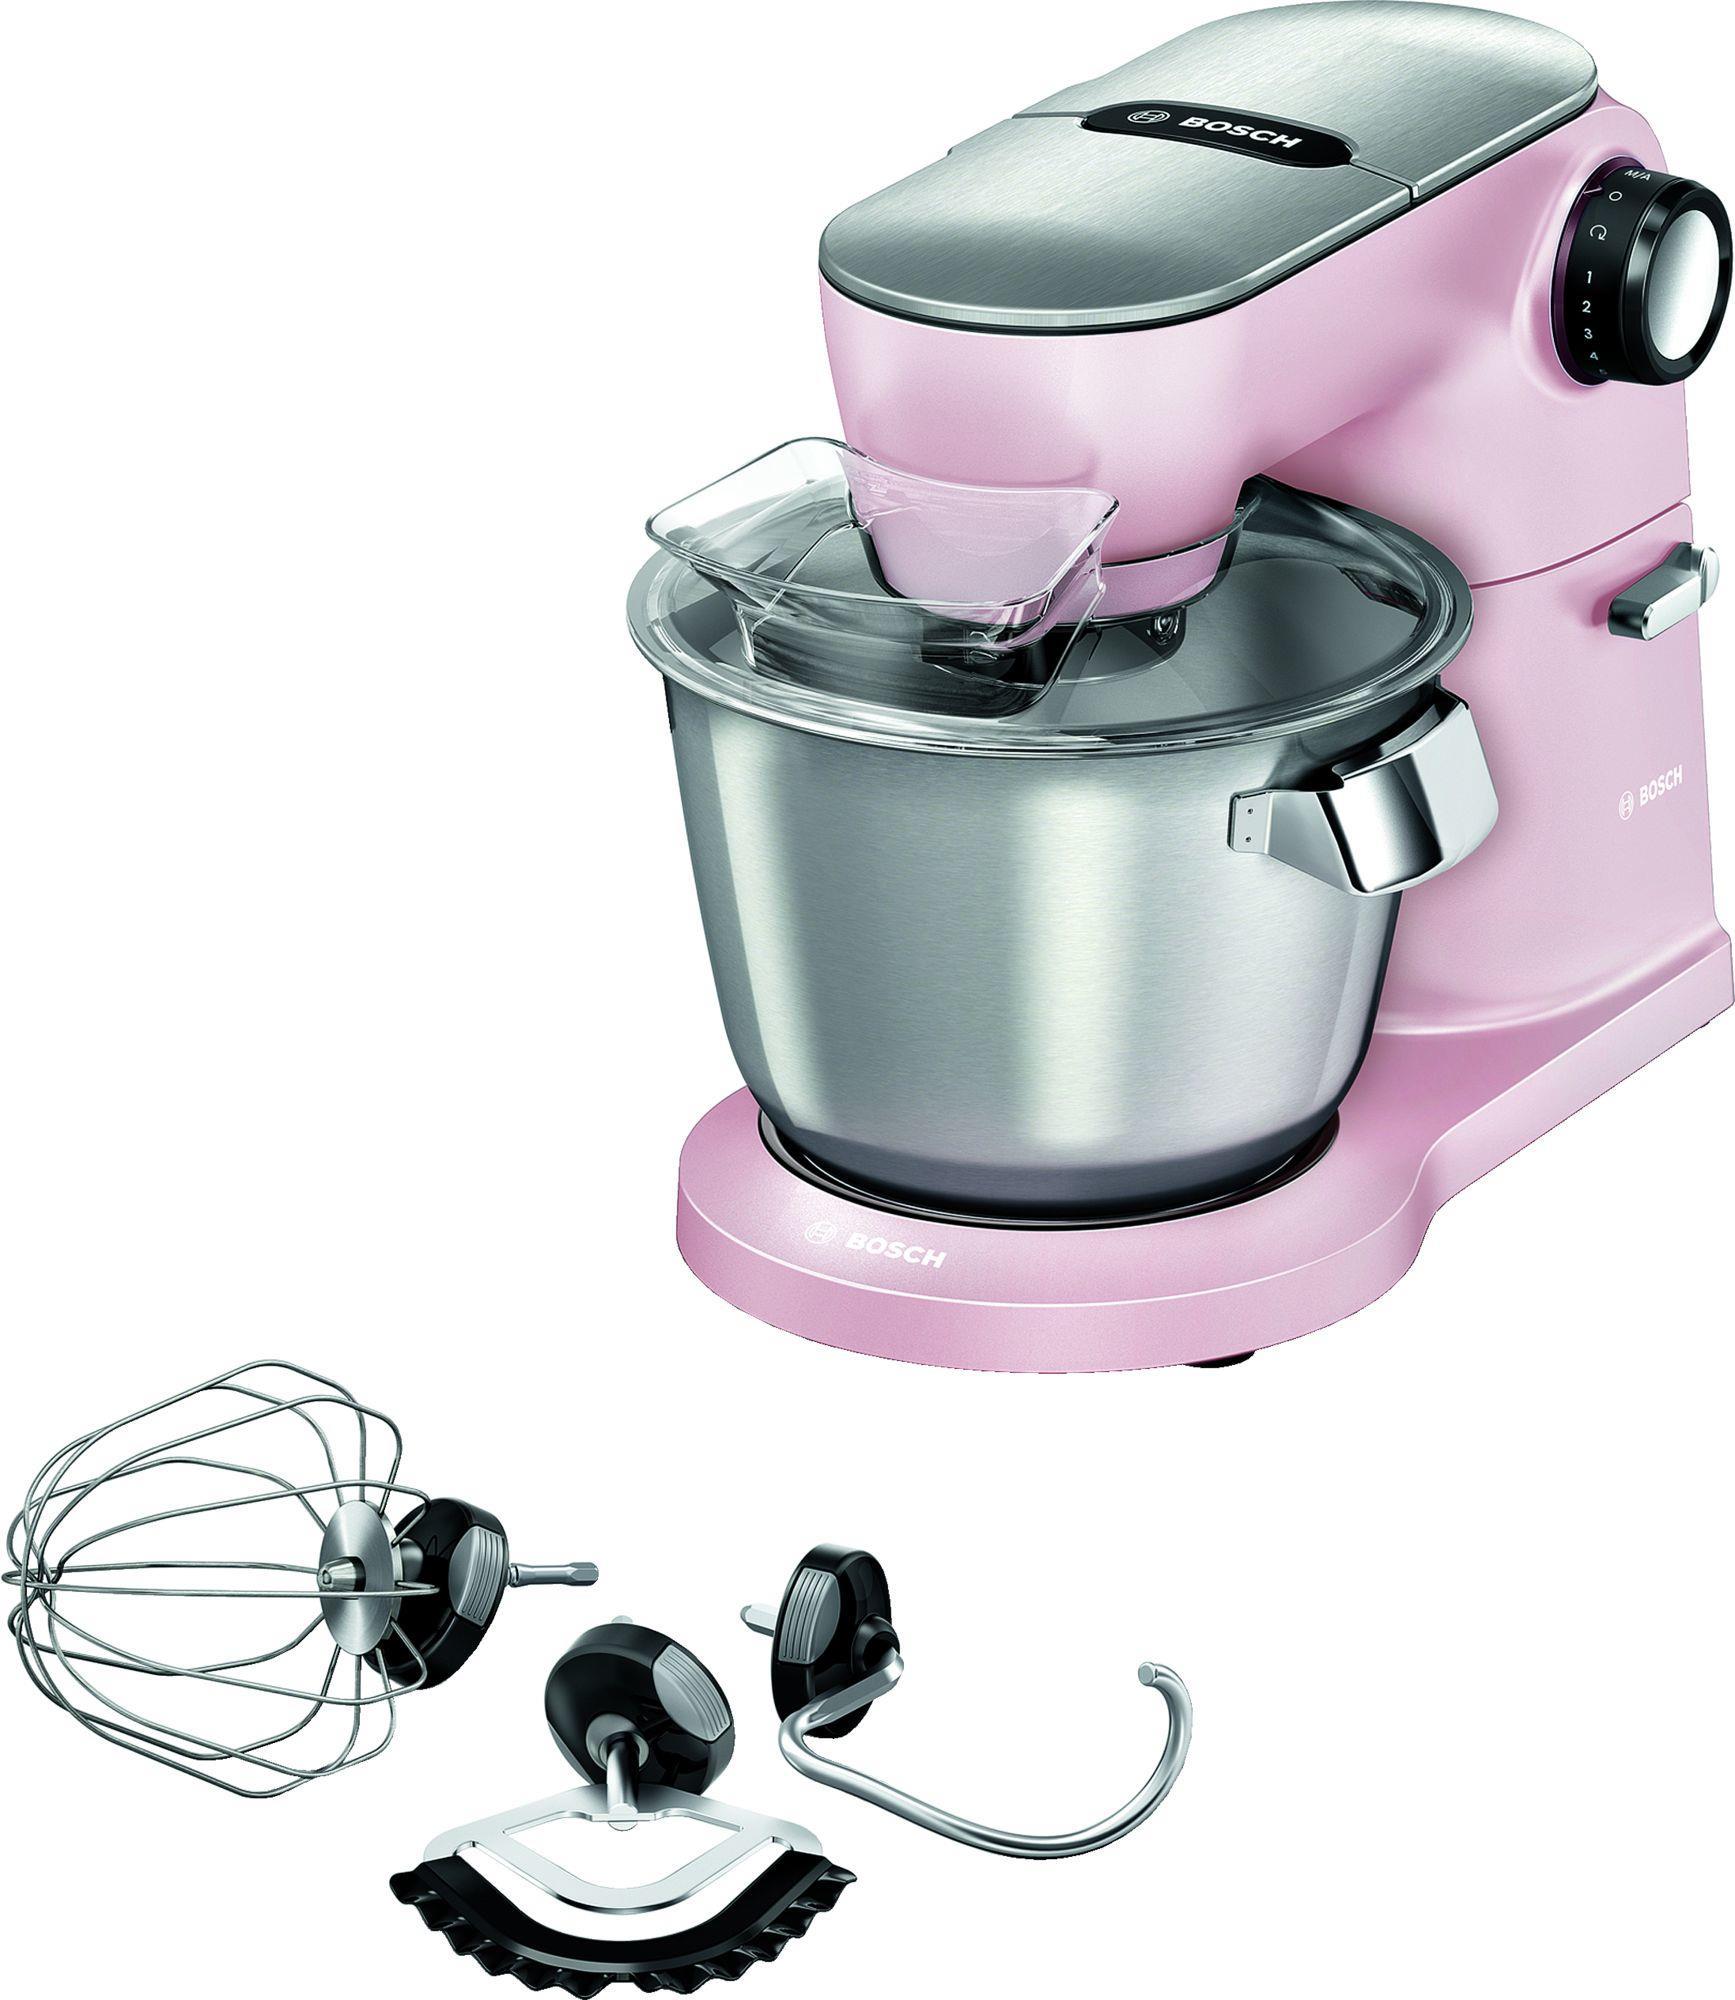 Bosch Küchenmaschine 5,5 l Pink - Edelstahl 1600 W (MUM9A66N00)